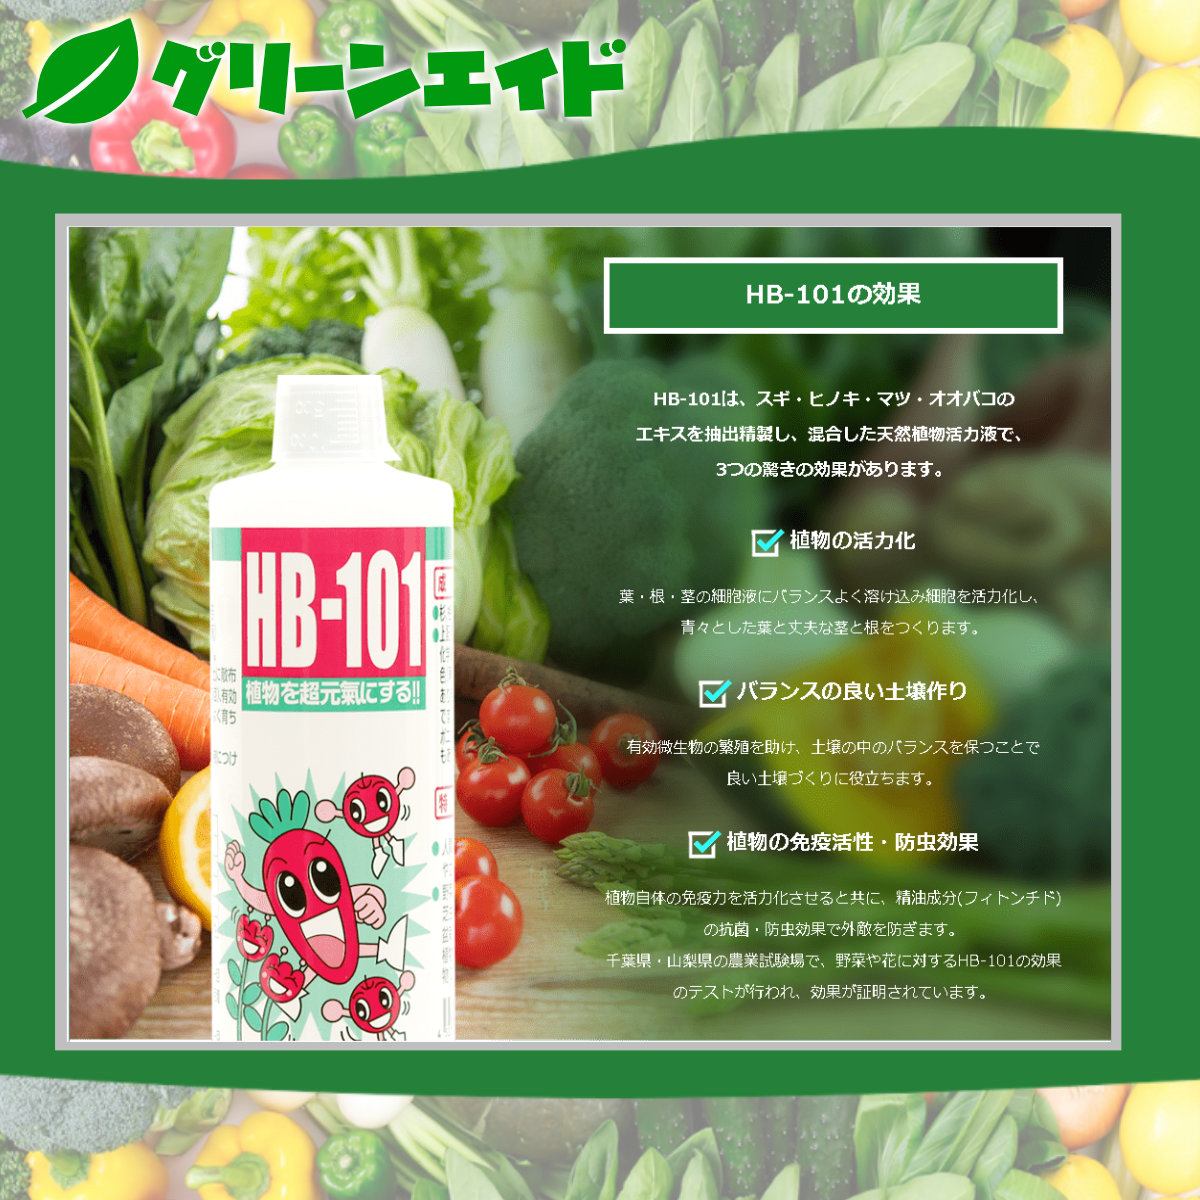 世界的に有名な フローラ 植物活力剤 HB-101 緩効性 アンプル 10本入り 30ml 原液6mlサンプル付き 